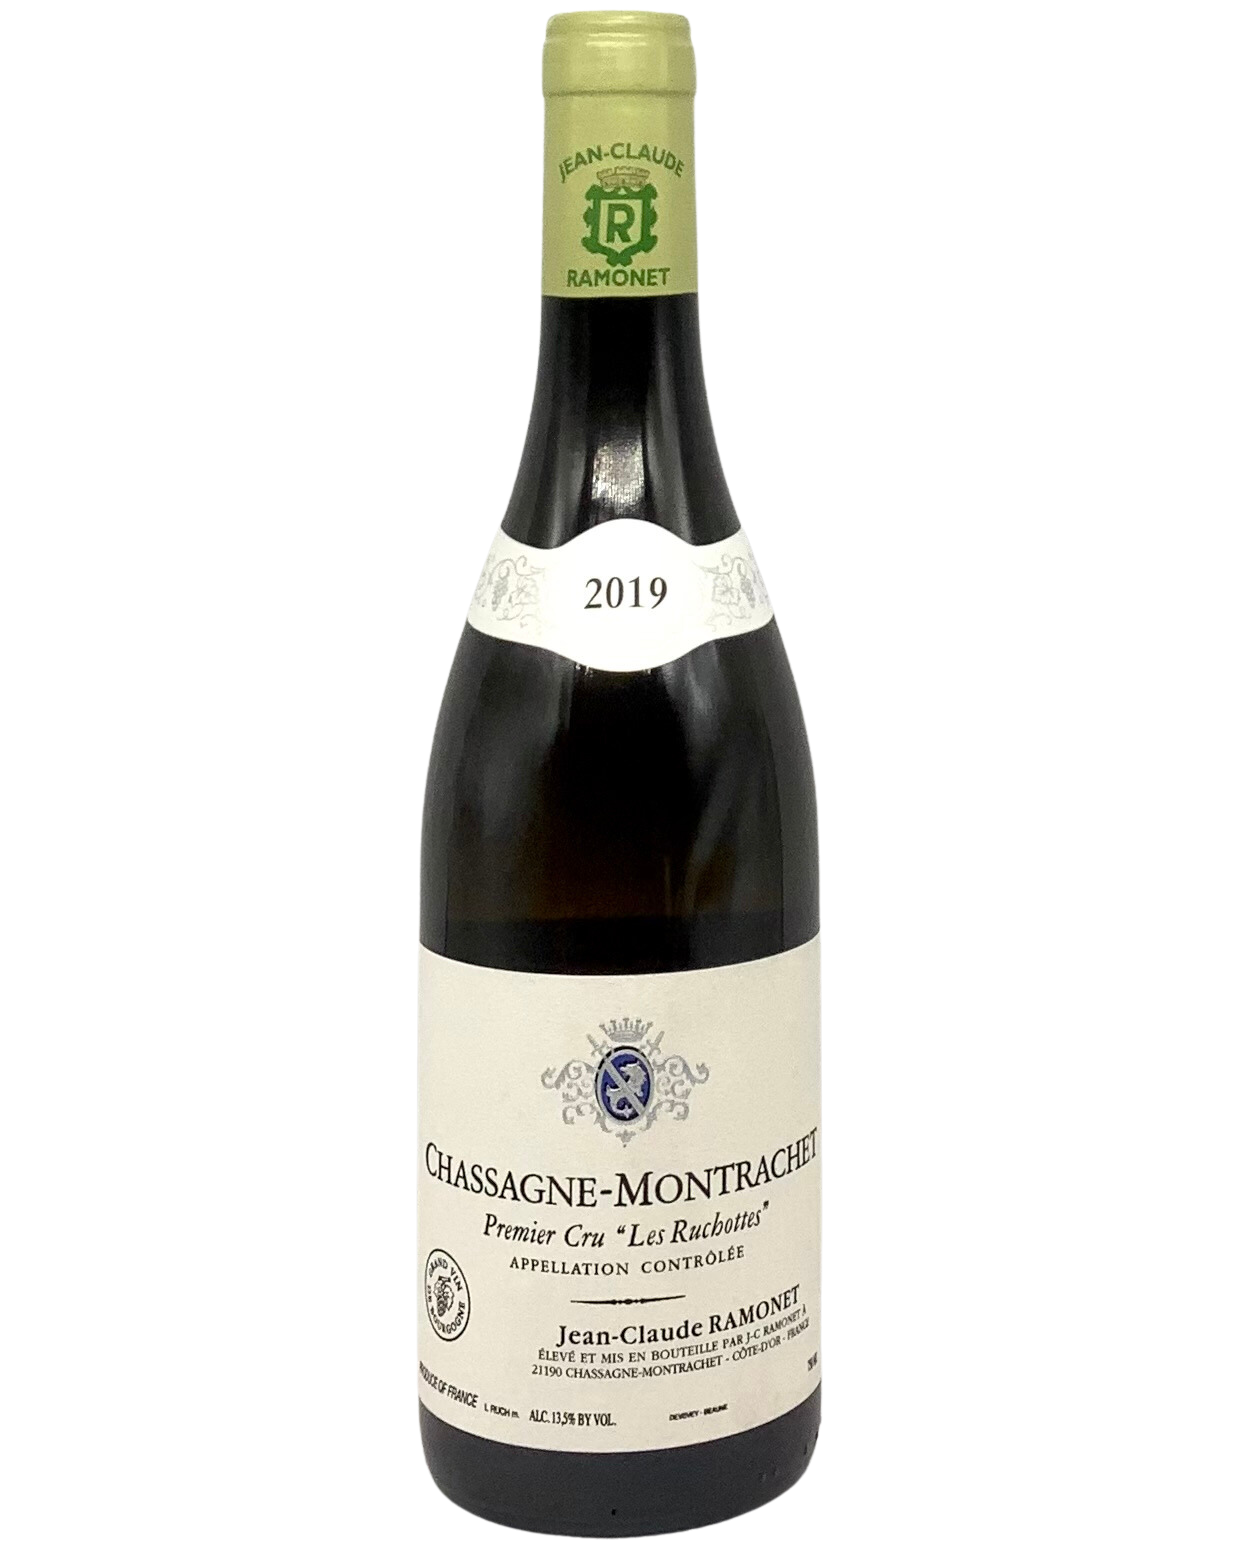 Jean-Claude Ramonet, Chardonnay, Chassagne-Montrachet Premier Cru "Les Ruchottes" Côte de Beaune, Burgundy, France 2019